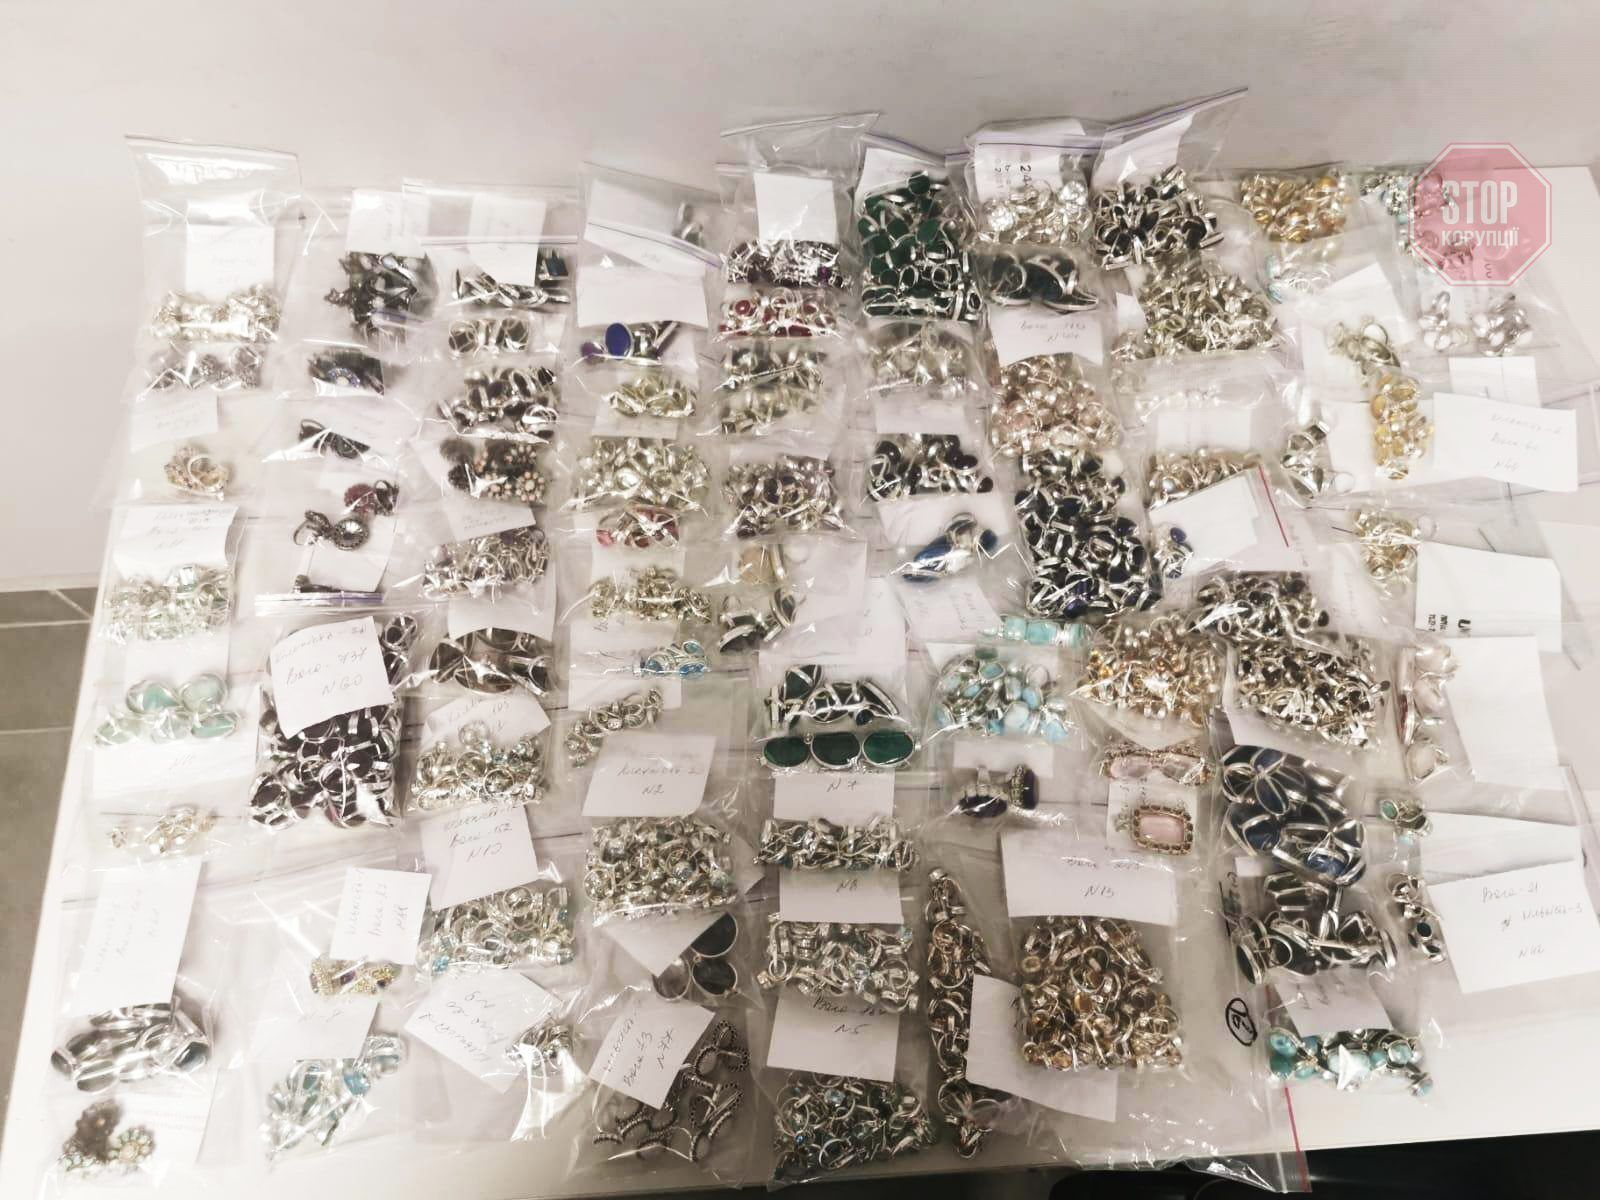  Прикордонники вилучили 90 комплектів срібних прикрас Фото: Державна прикордонна служба